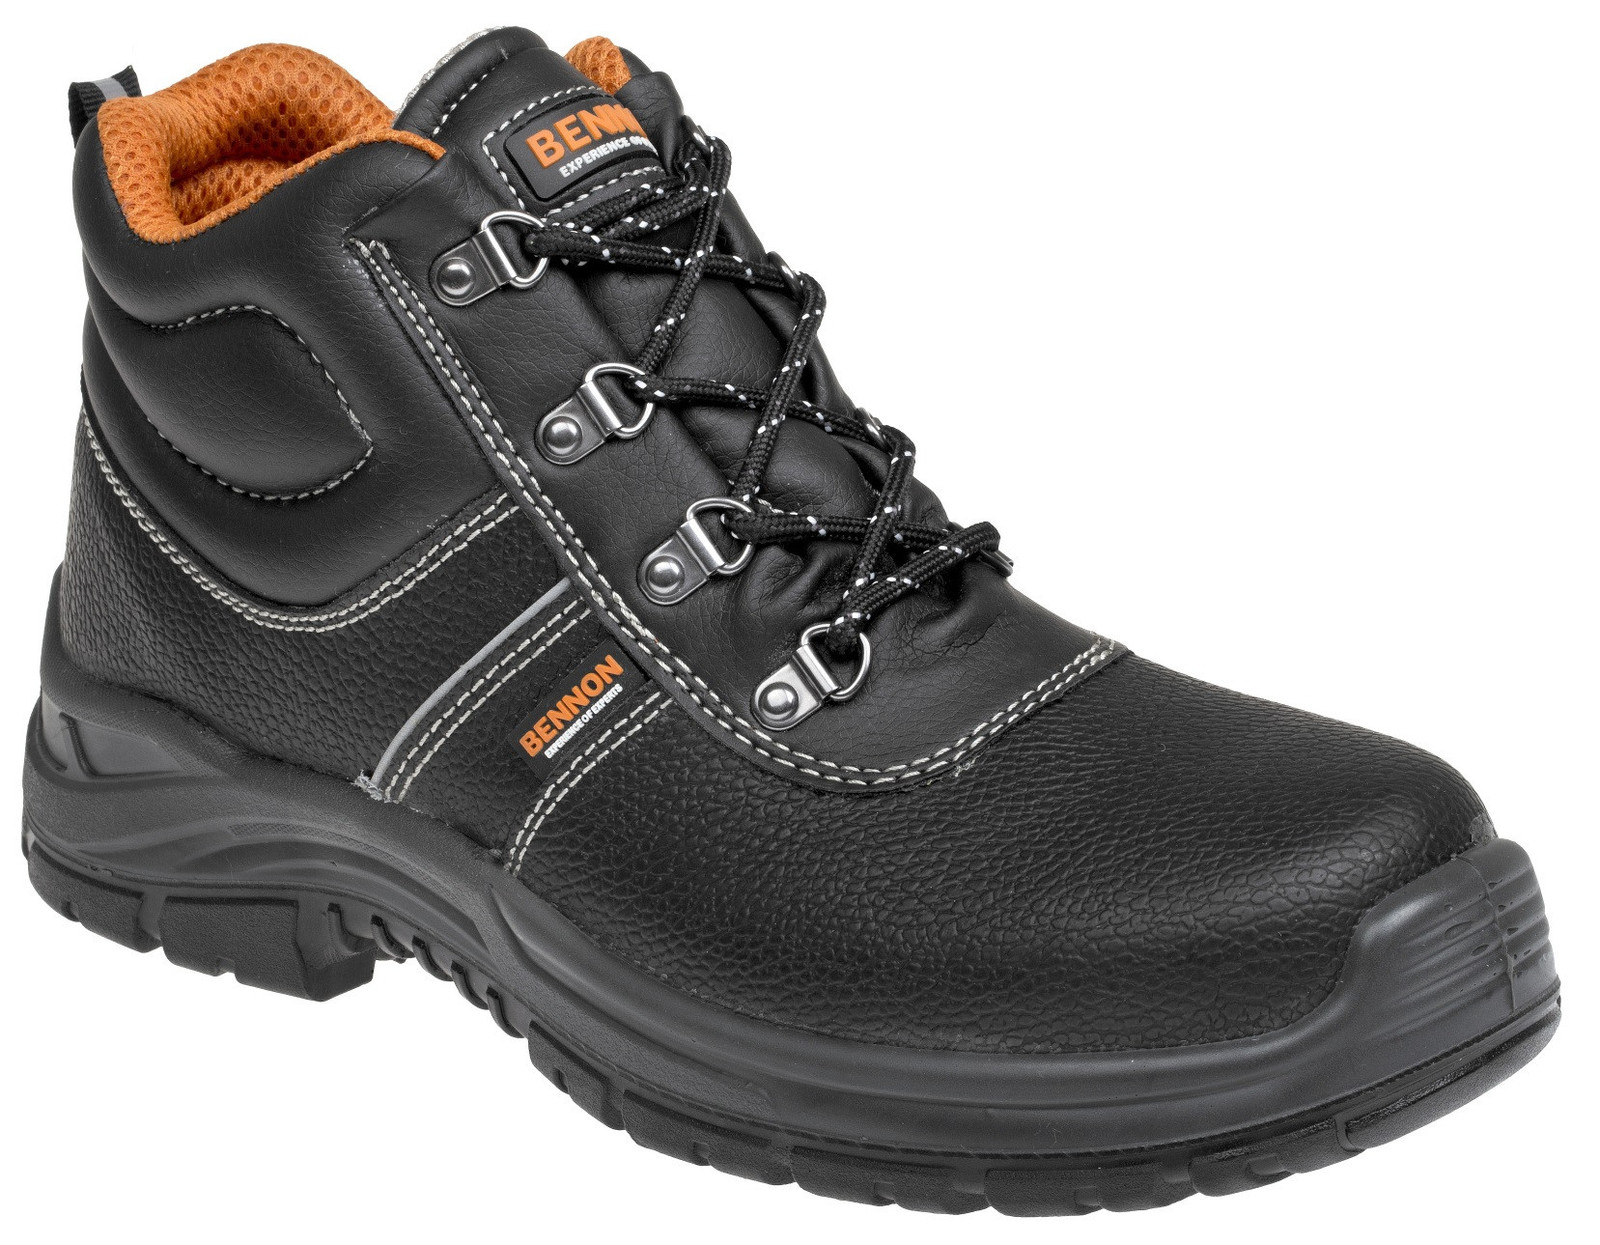 Bezpečnostná obuv Bennon Basic S3 - veľkosť: 50, farba: čierna